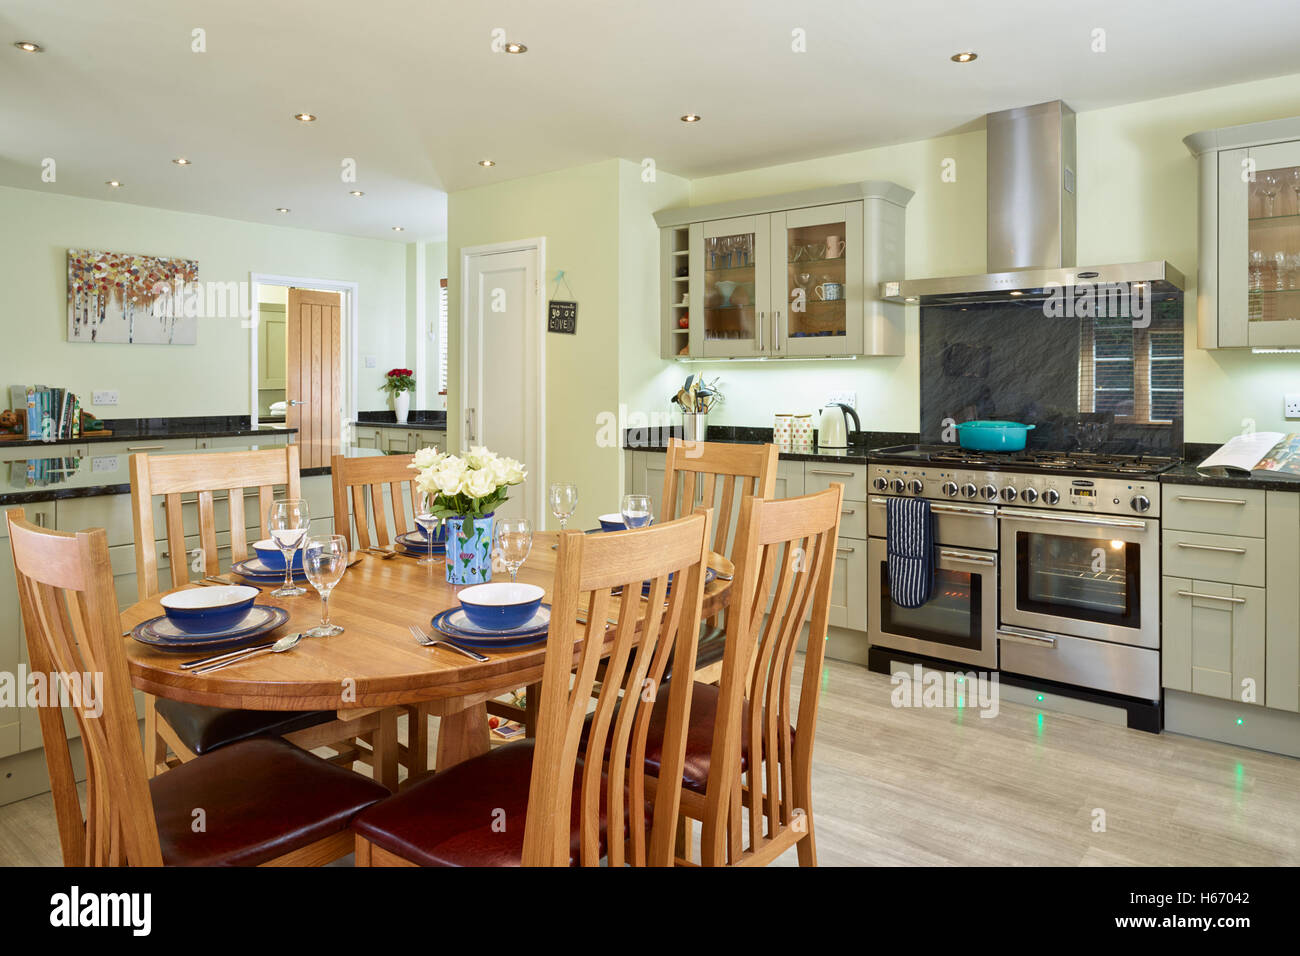 Eine moderne offene Küche Einbeziehung ein Küchenherd, Arbeitsplatten Haube & Granit. Oxfordshire, Vereinigtes Königreich Stockfoto